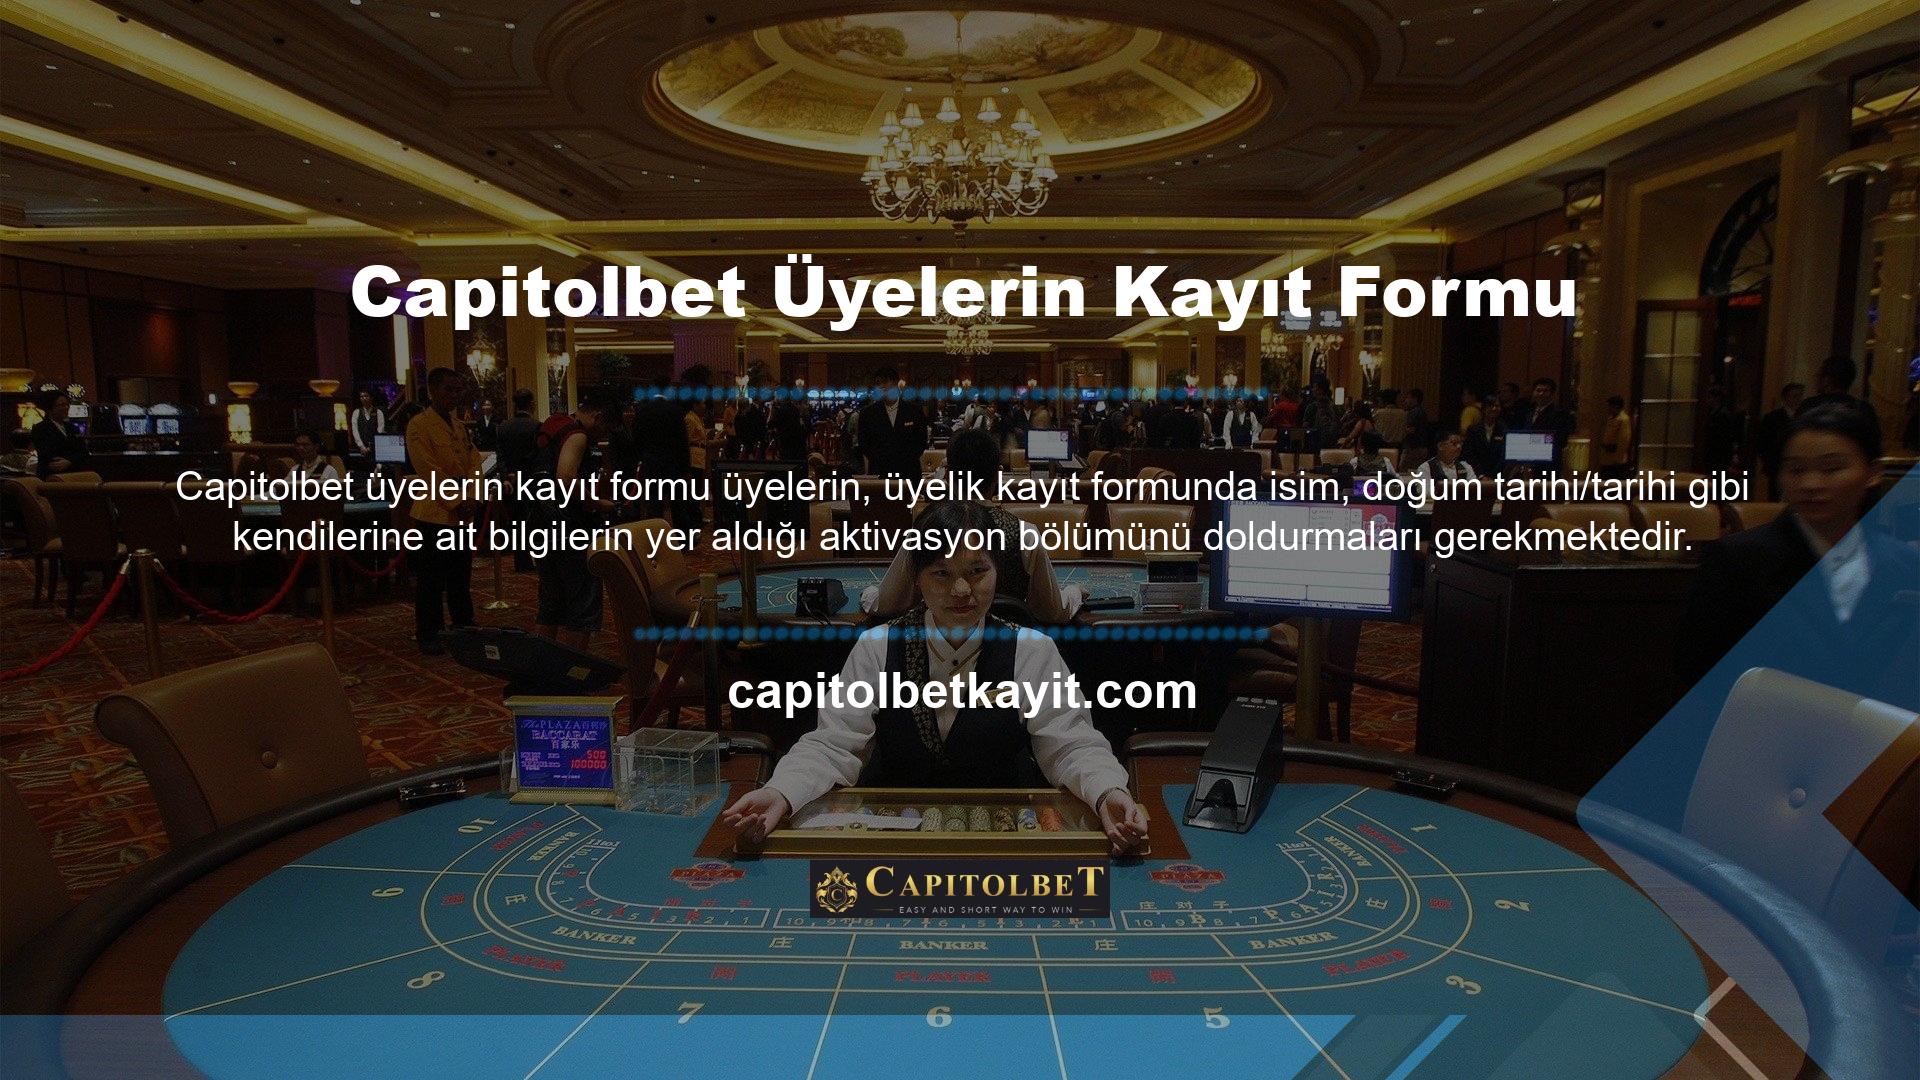 Güvenilir casino siteleri hakkında ek ayrıntıları sitenin adresinde bulabilirsiniz